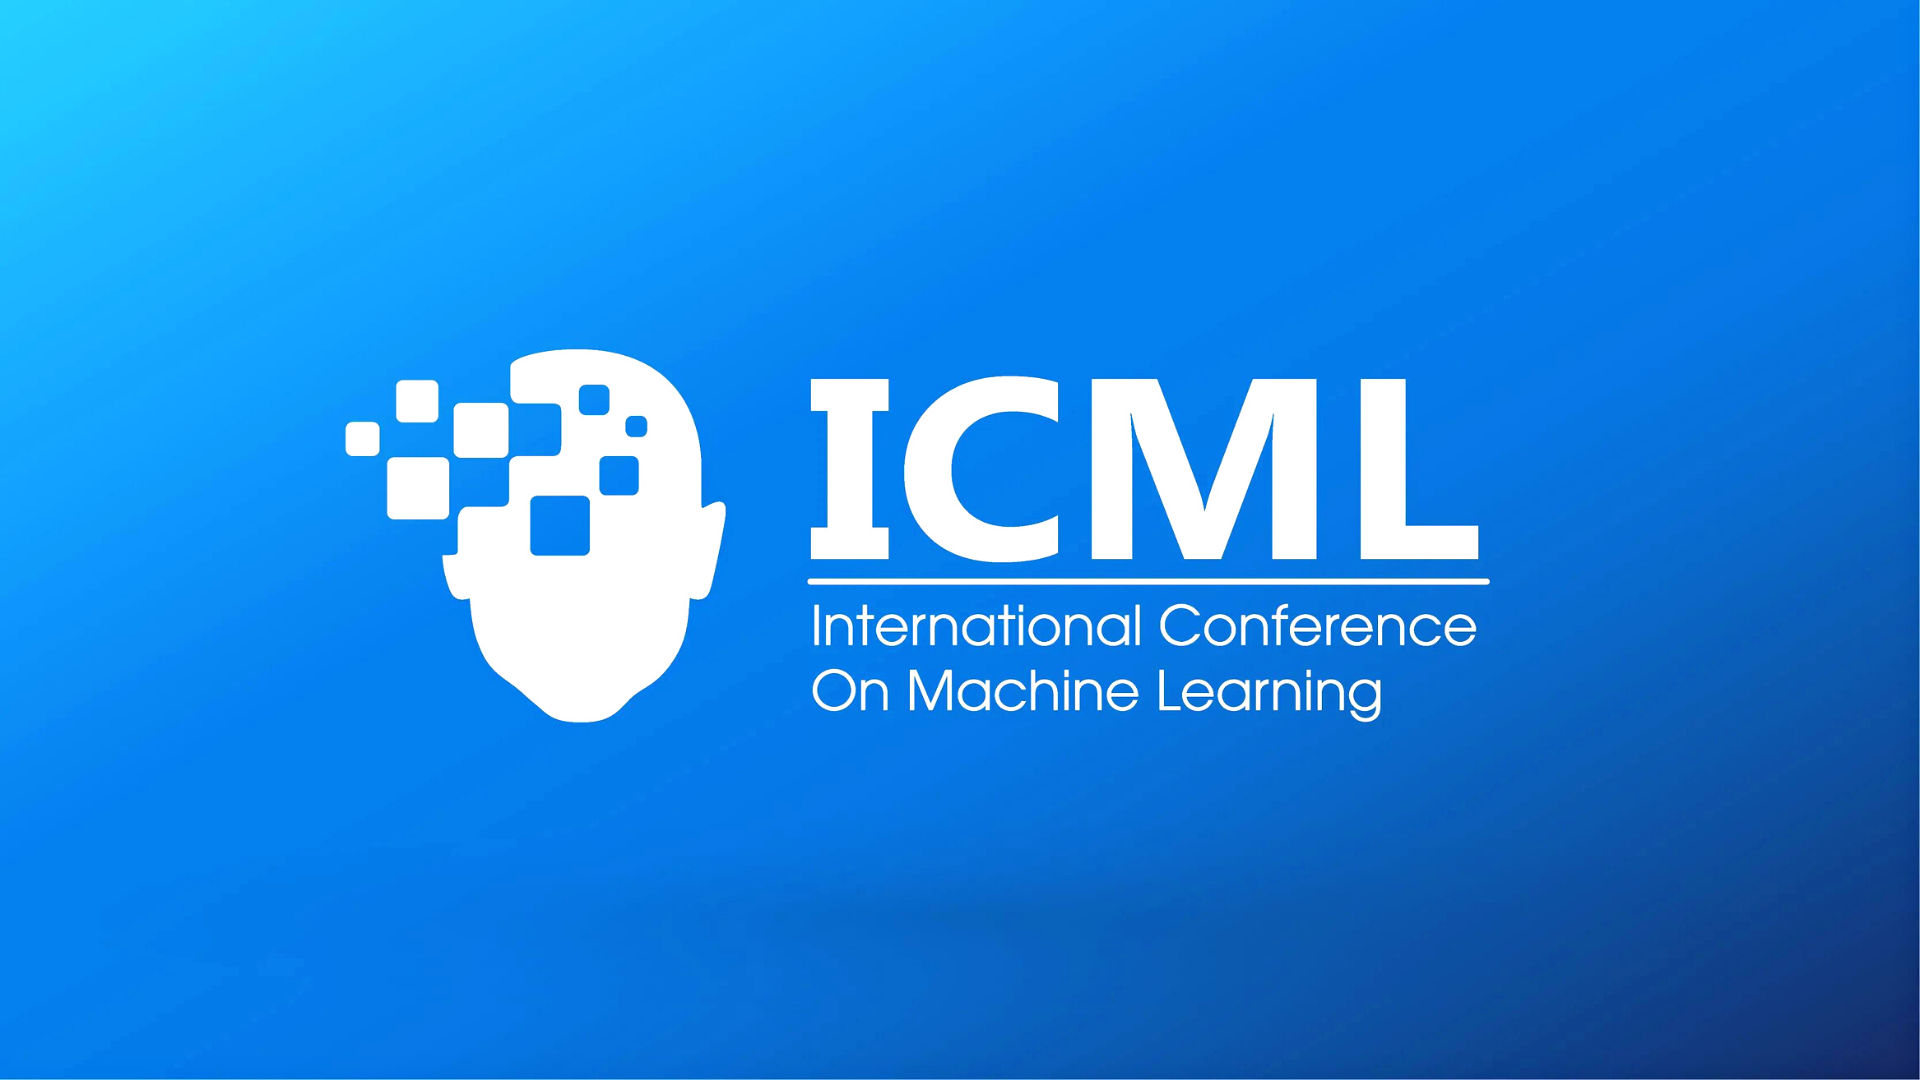 Avances destacados en IA y Astrofísica: tres papers de la UDS UdeC son aceptados para la International Conference on Machine Learning